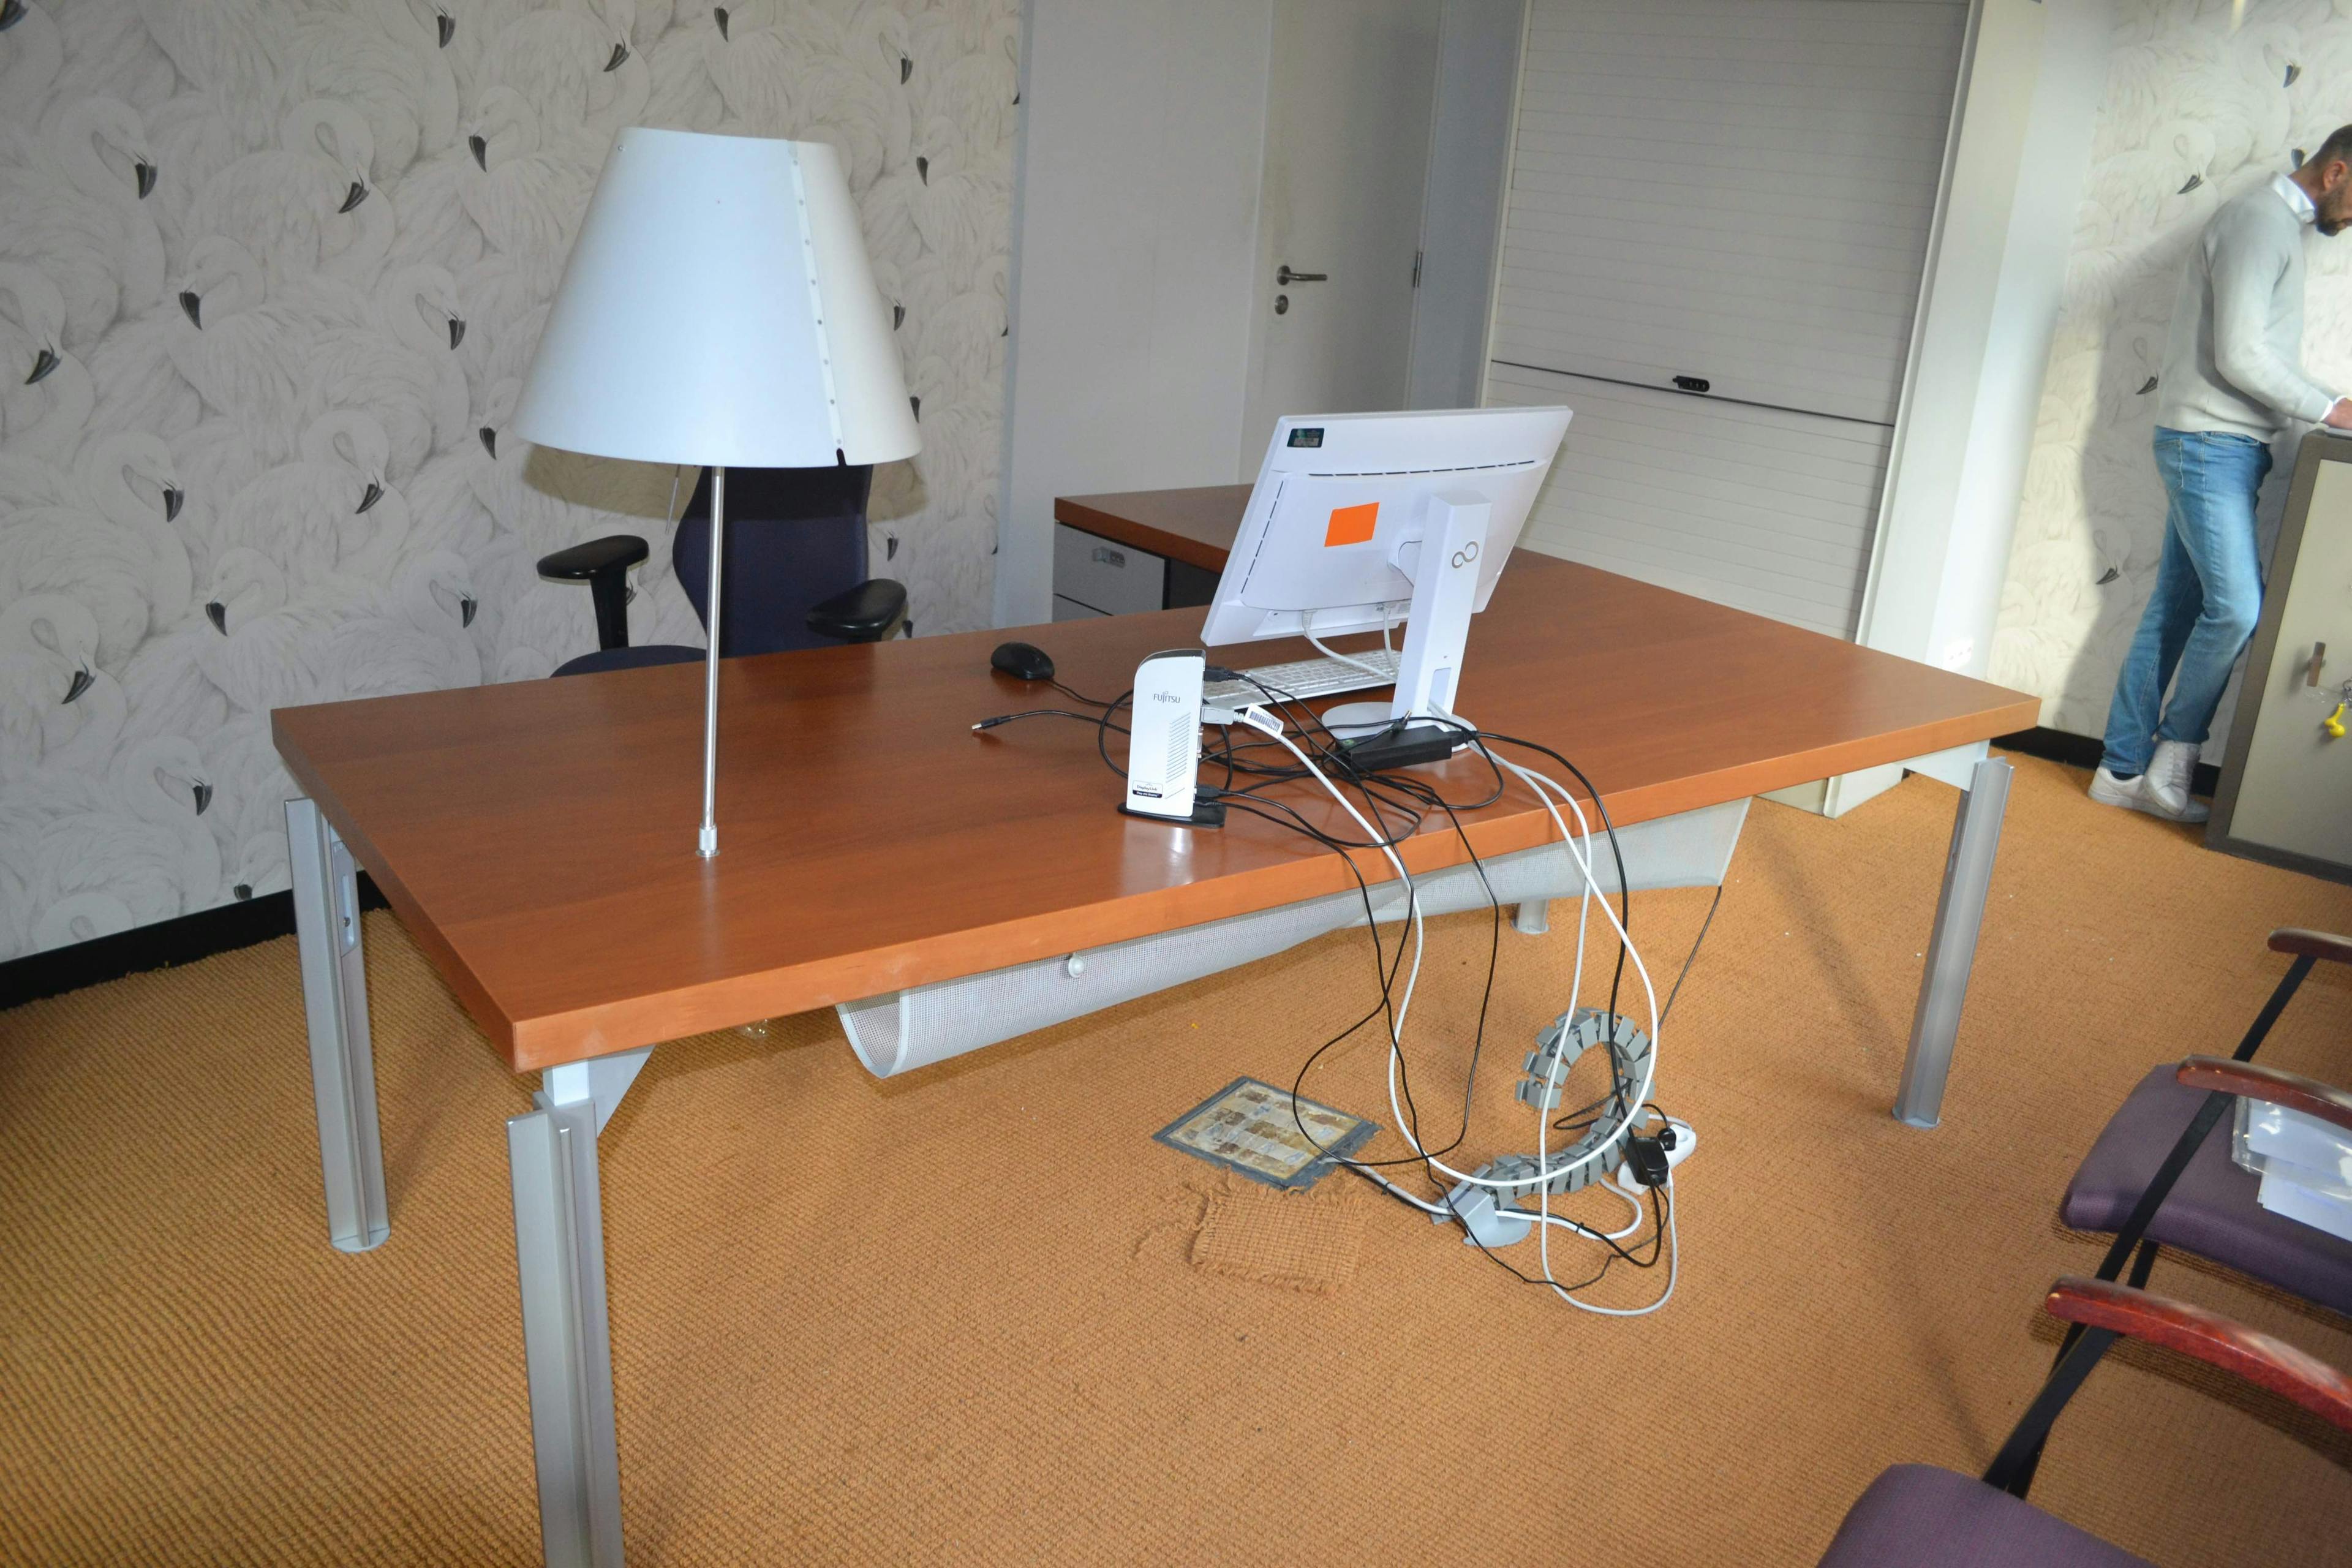 Bureau en L avec lampe / Bureau L Vorm met lamp - Second hand quality "Desks" - Relieve Furniture - 1